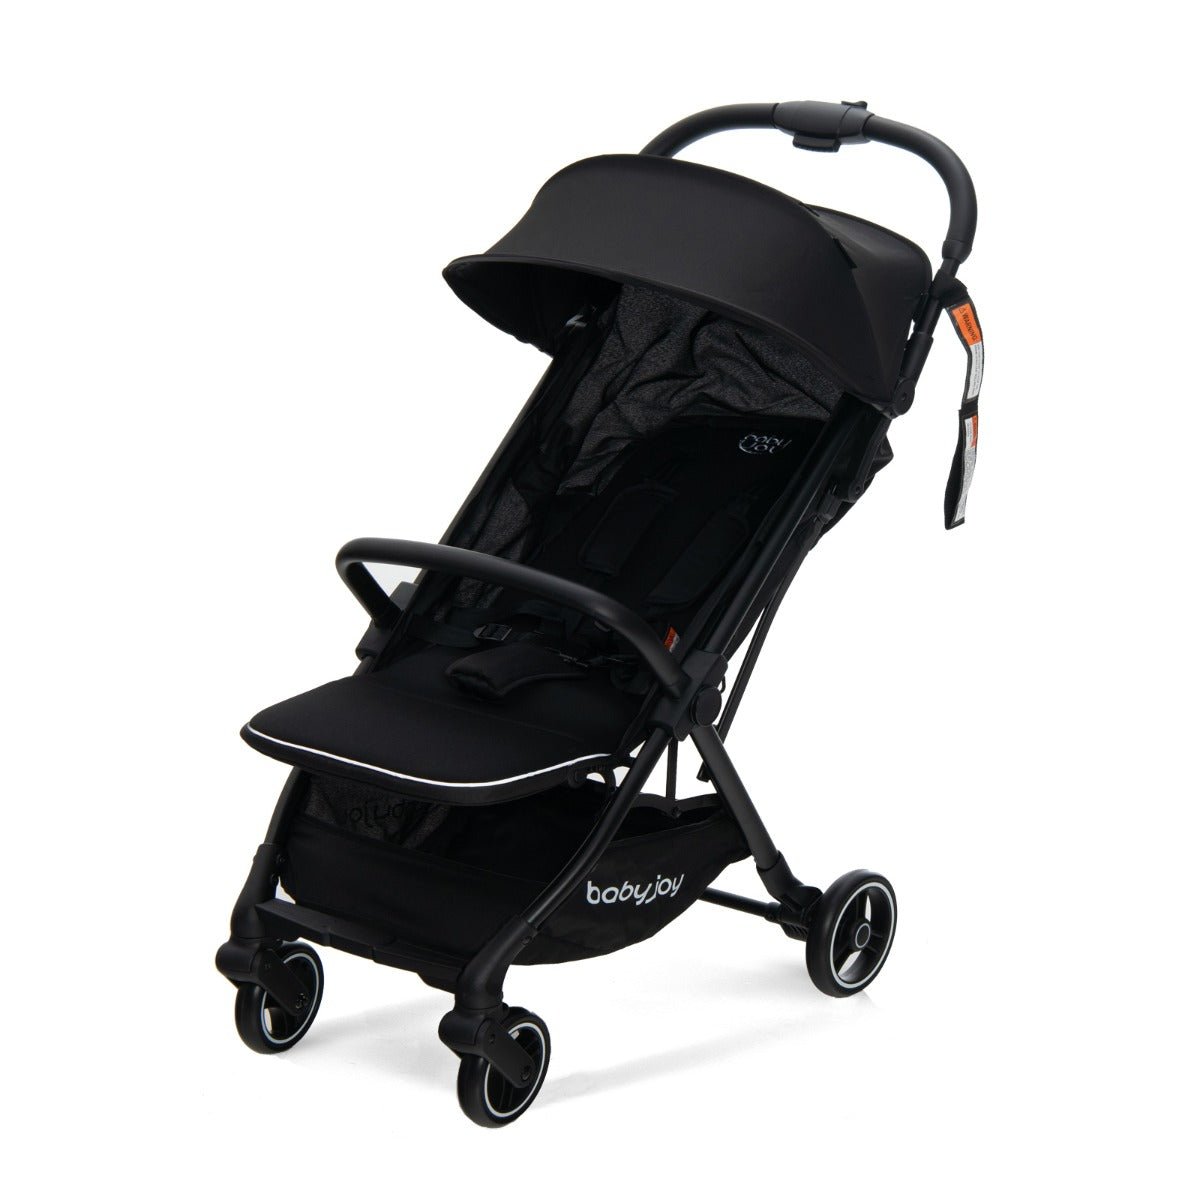 Black Folding Infant Stroller with Adjustable Canopy